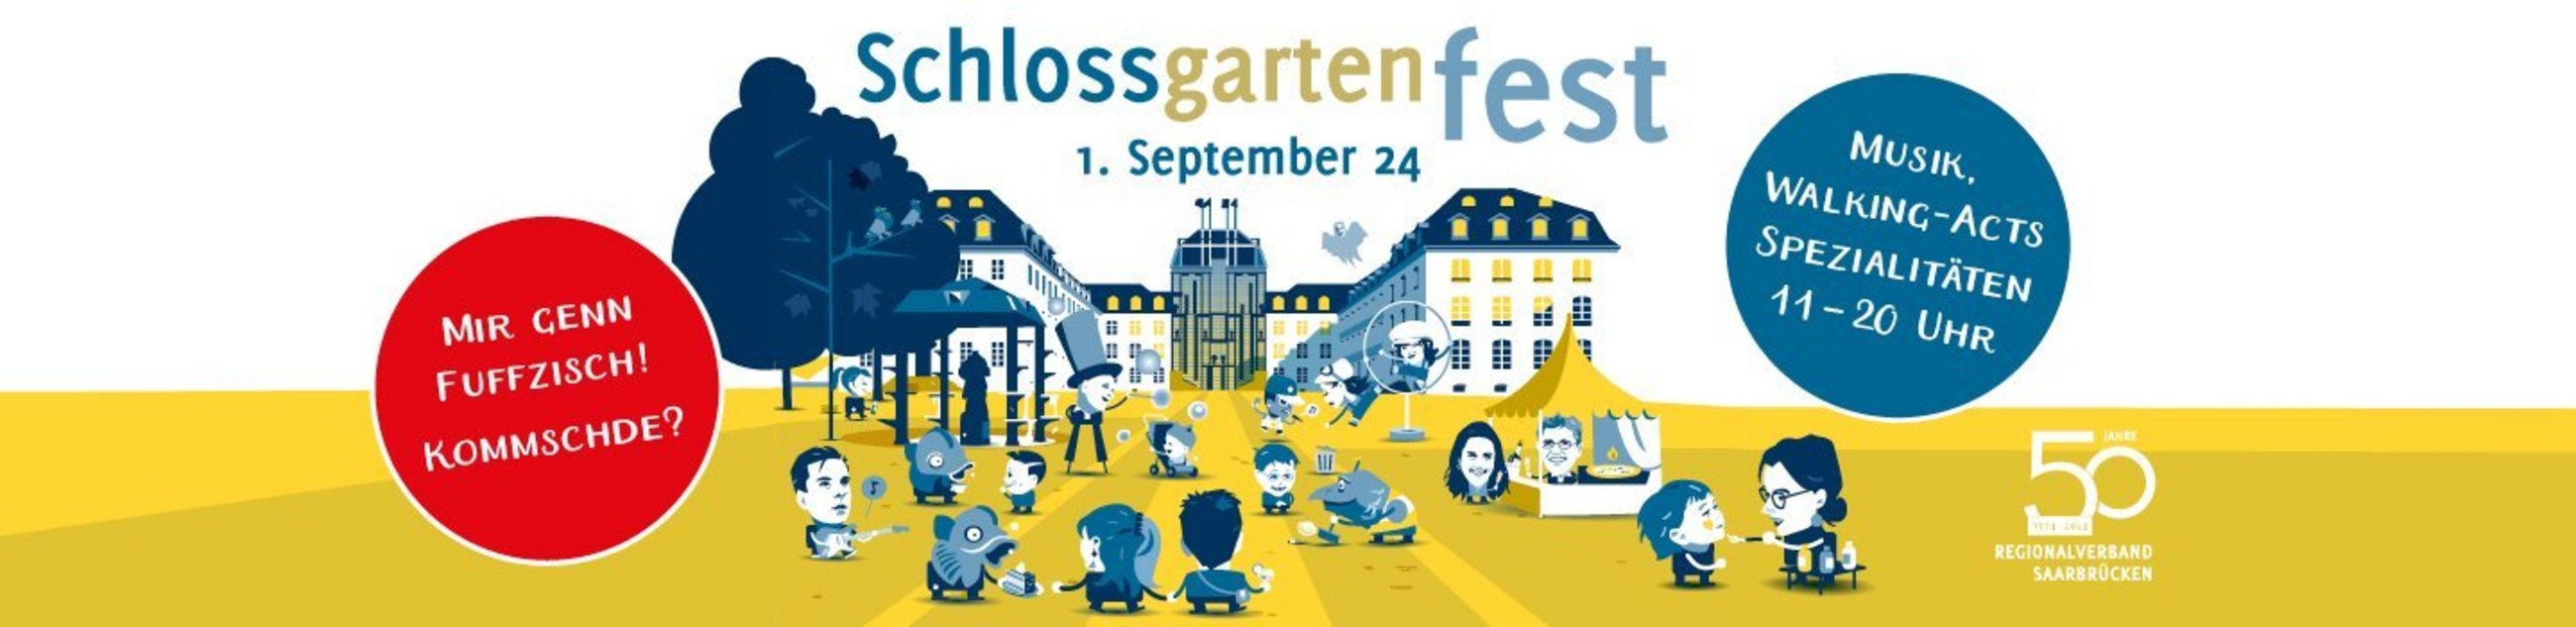 Schlossgartenfest_Slider_50JahrSeite